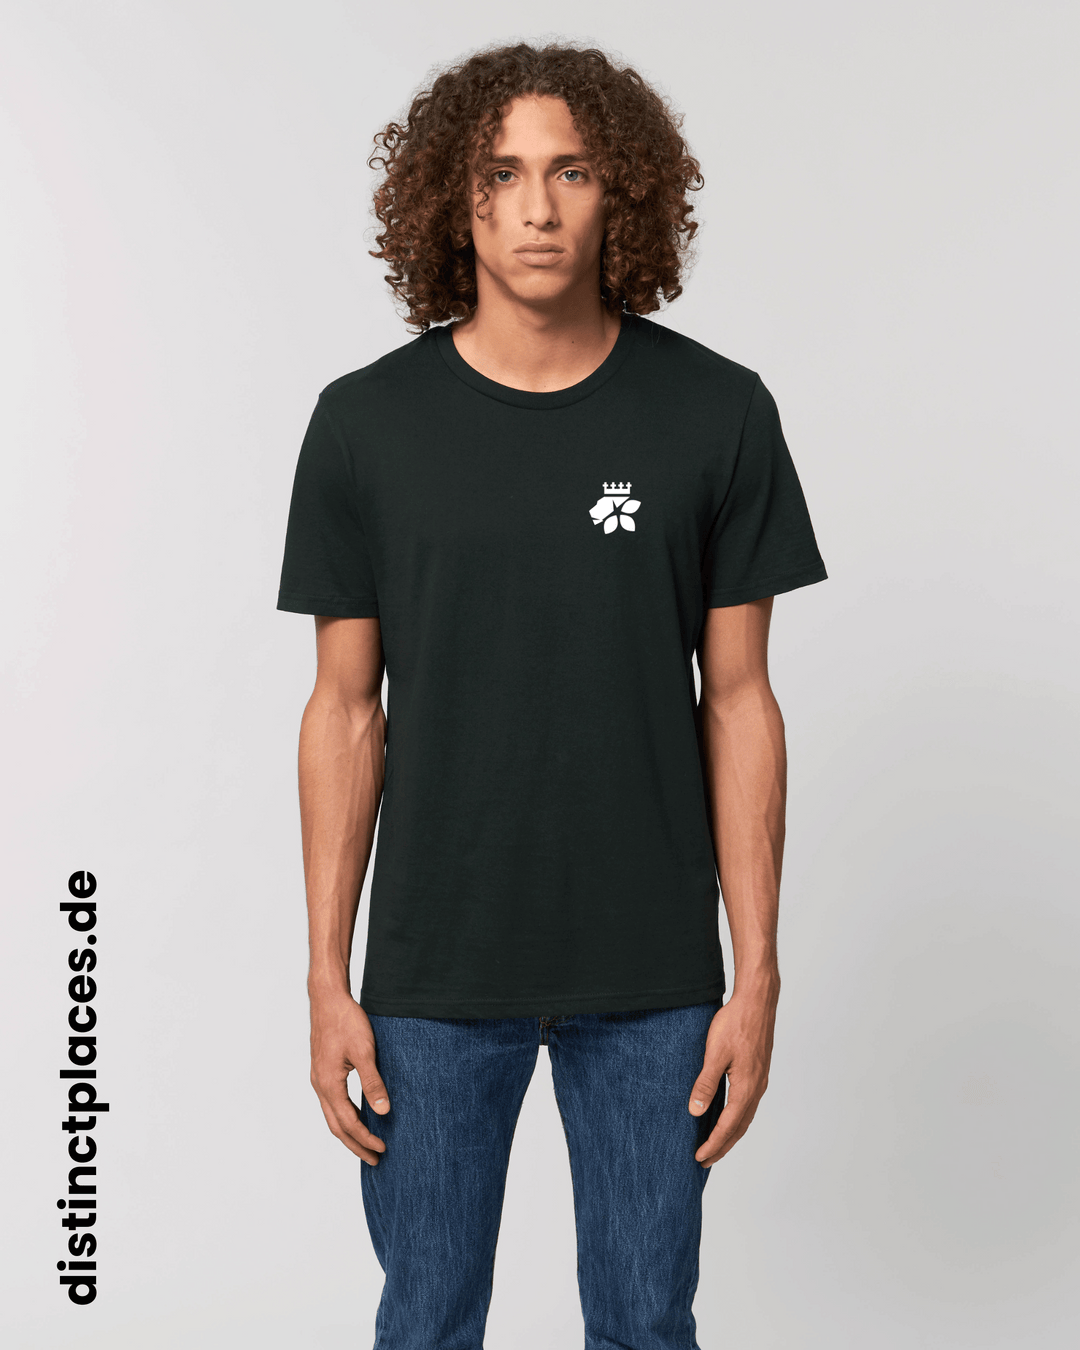 Mann von vorne trägt schwarzes fairtrade, vegan und bio-baumwoll T-Shirt mit einem minimalistischem weißen Logo, beziehungsweise Wappen für Saarbrücken